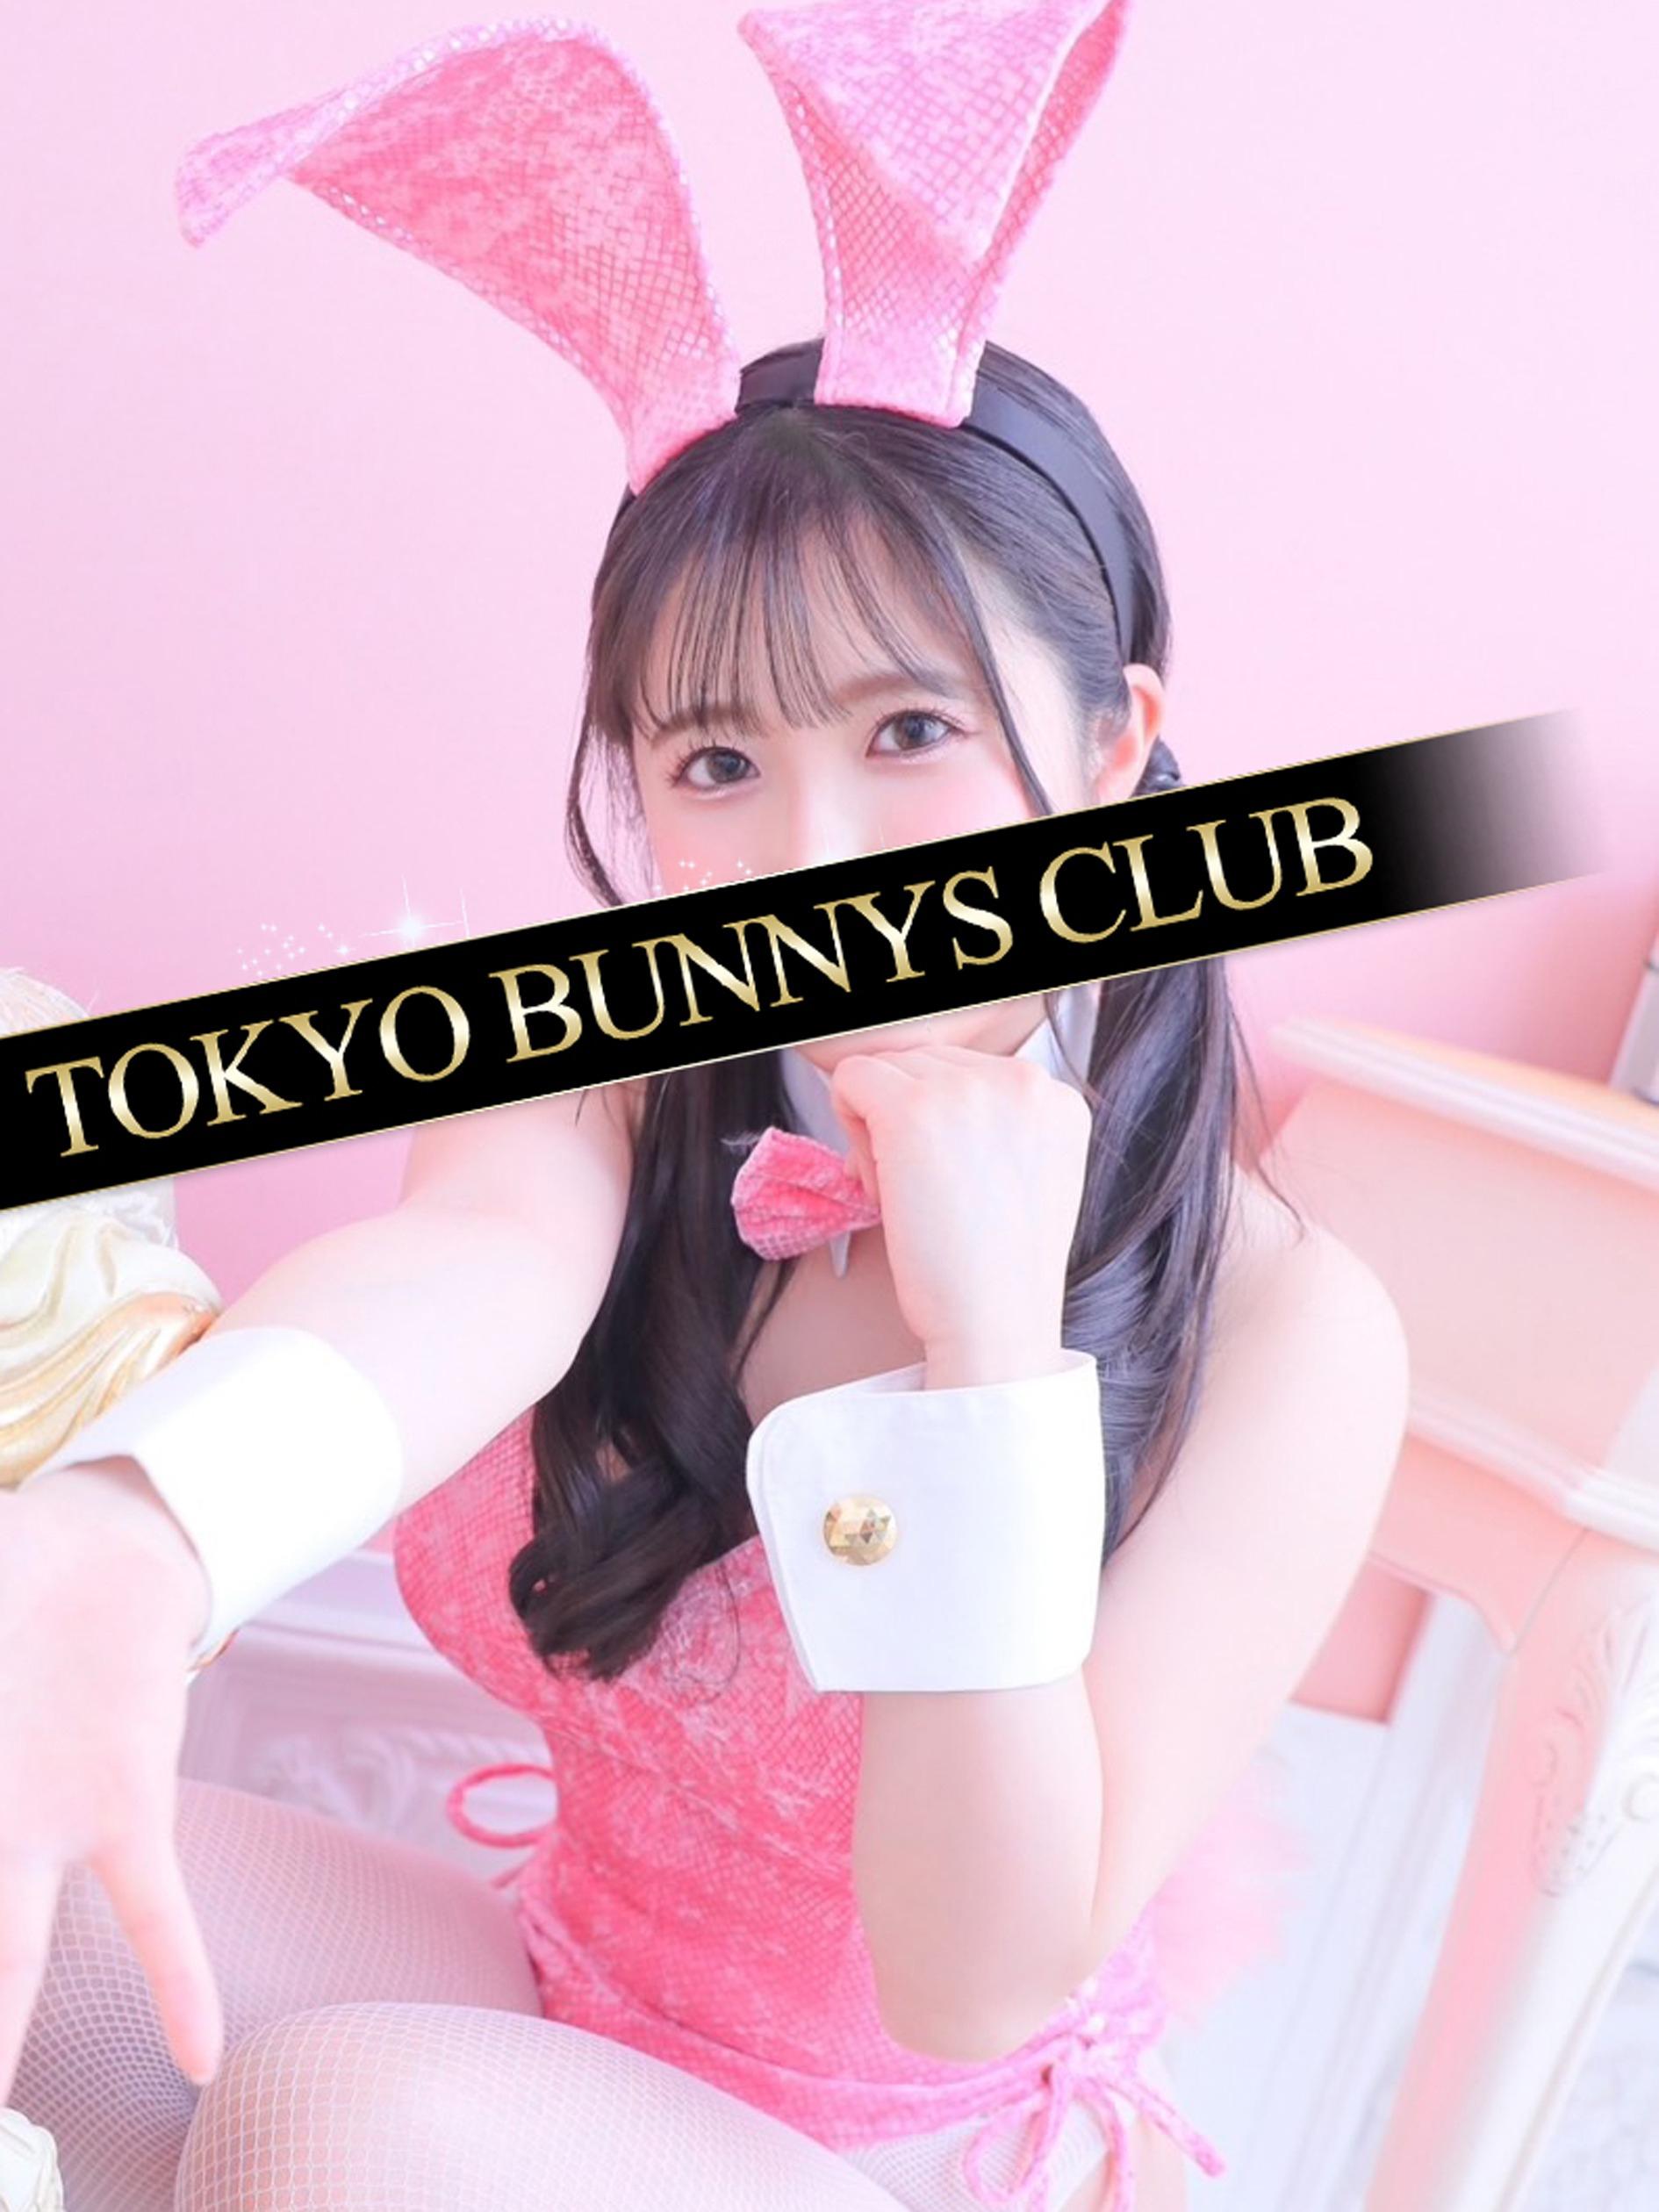 ねいろ | 吉原 TOKYO BUNNYS CLUB (1 / 6)